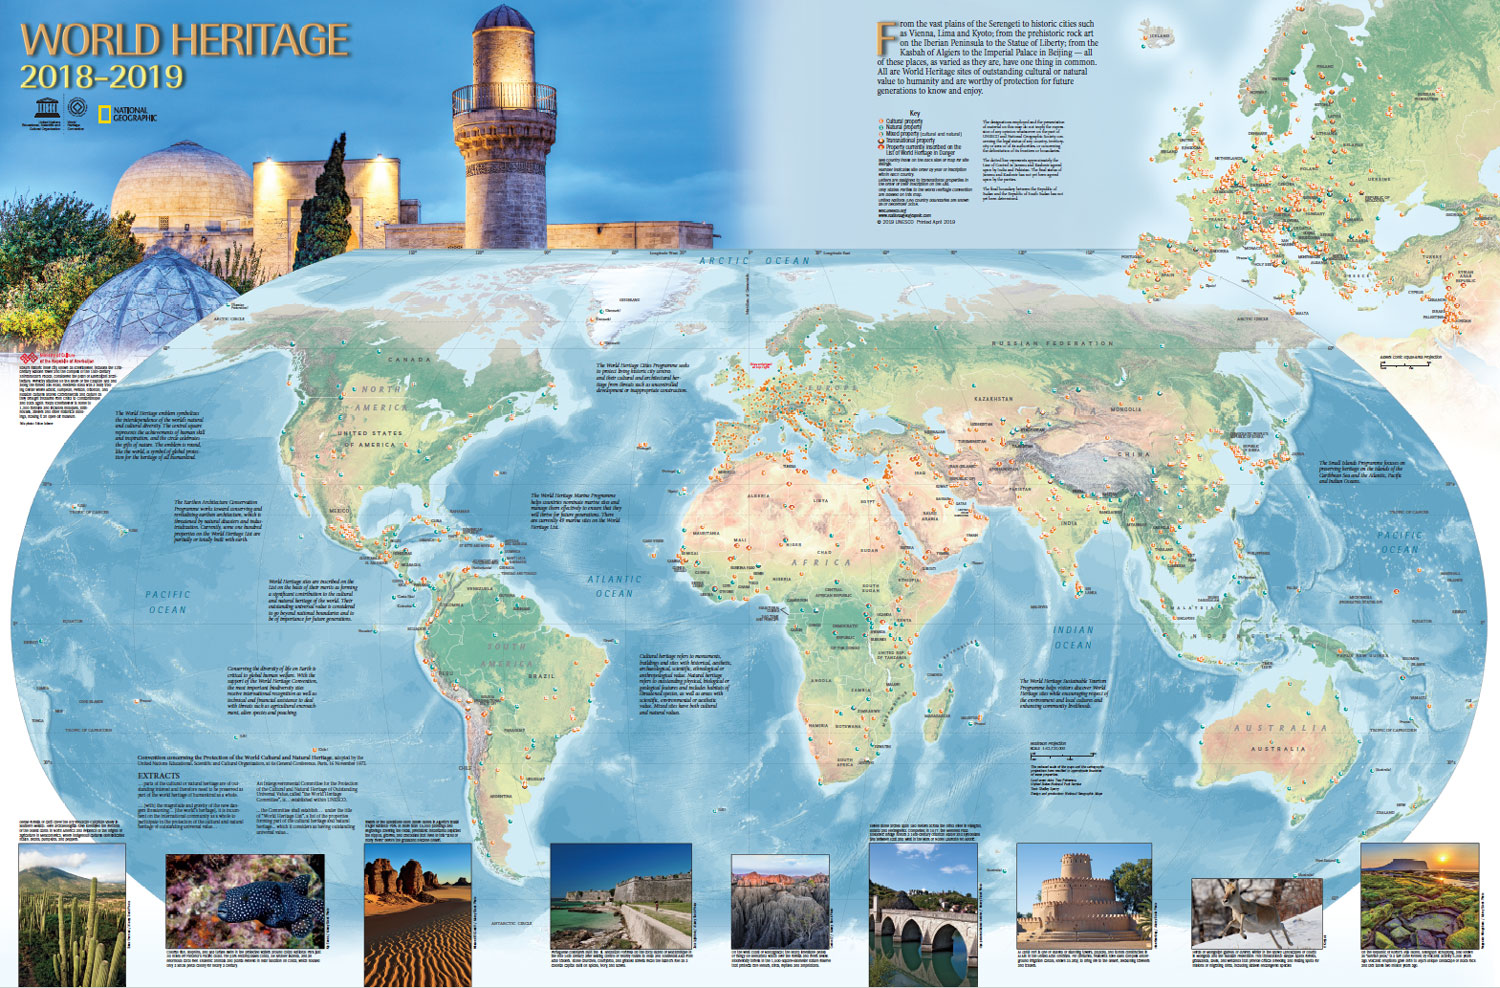 Whc unesco. Карта объектов Всемирного наследия ЮНЕСКО В мире. Объекты Всемирного наследия ЮНЕСКО на карте.